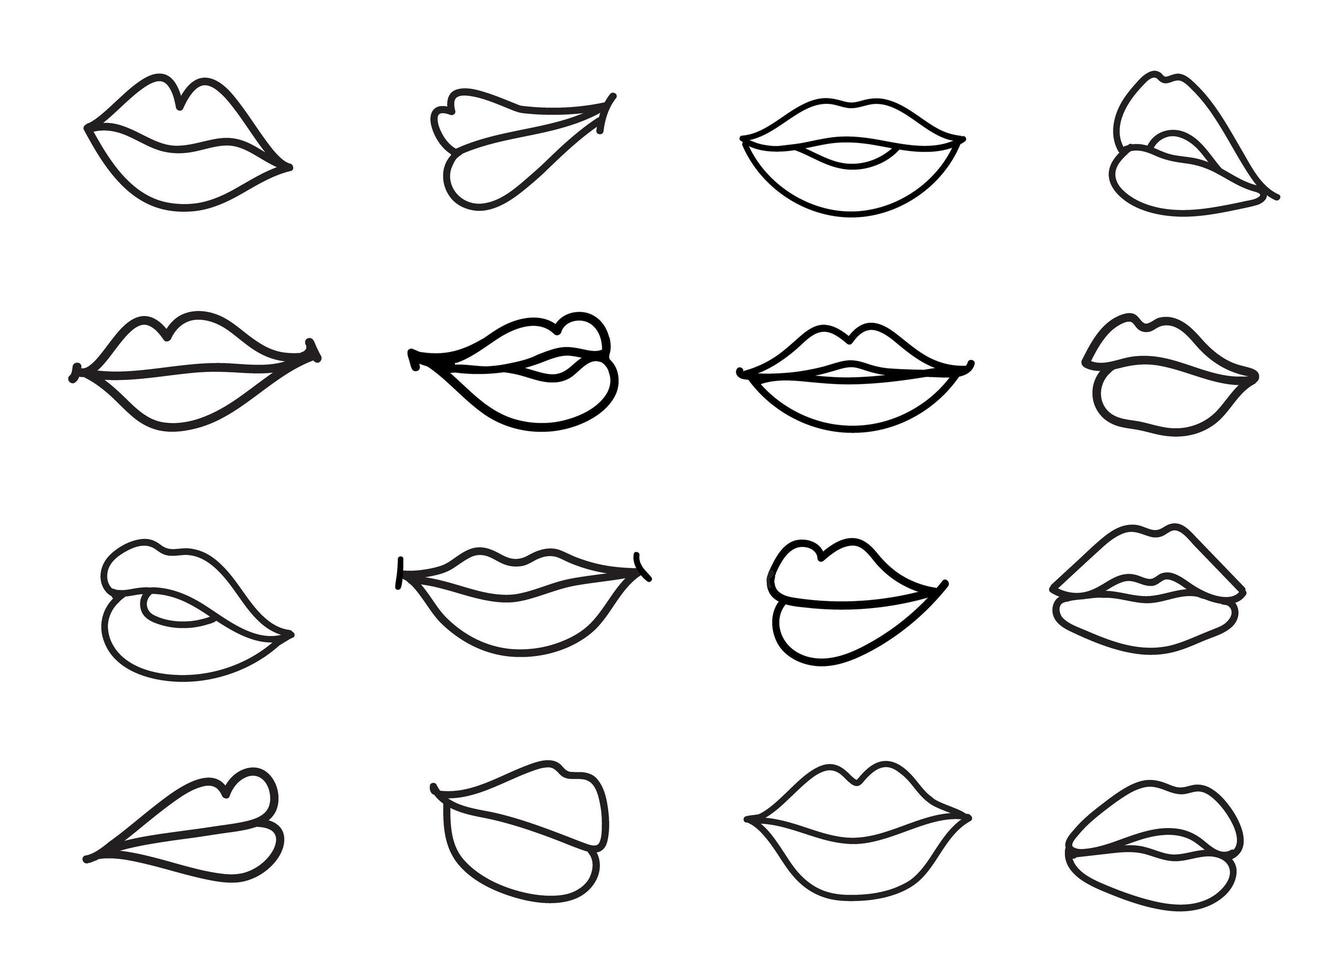 Vektorsatz Lippenillustration. lineare Skizze Frauenlippen vektor